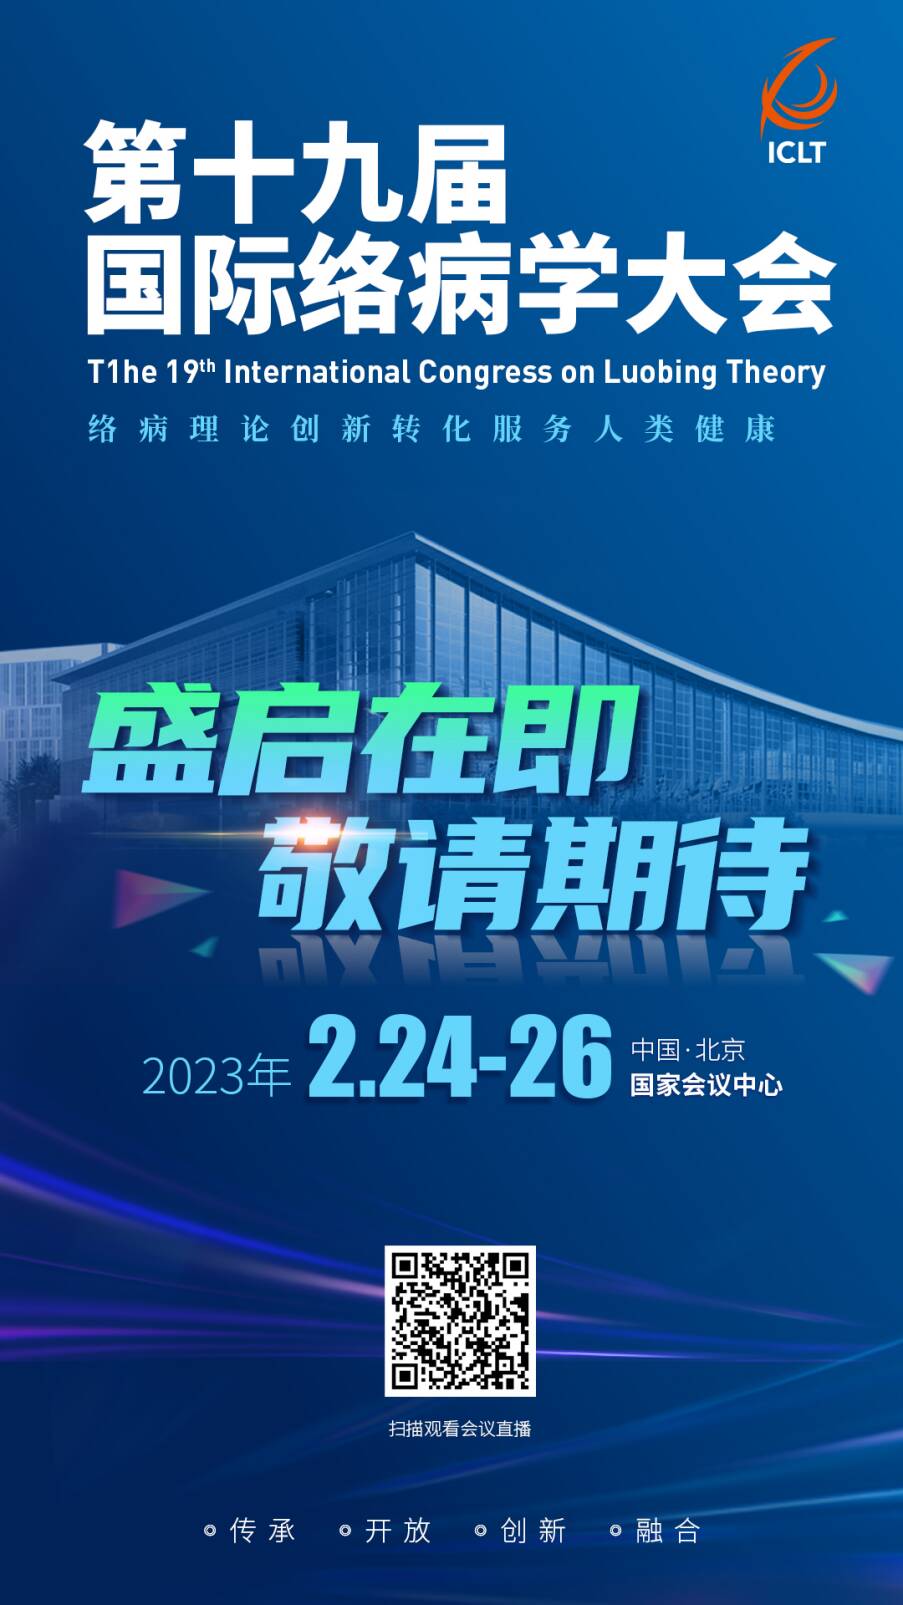 第十九届国际络病学大会将于2月24至26日在北京举行